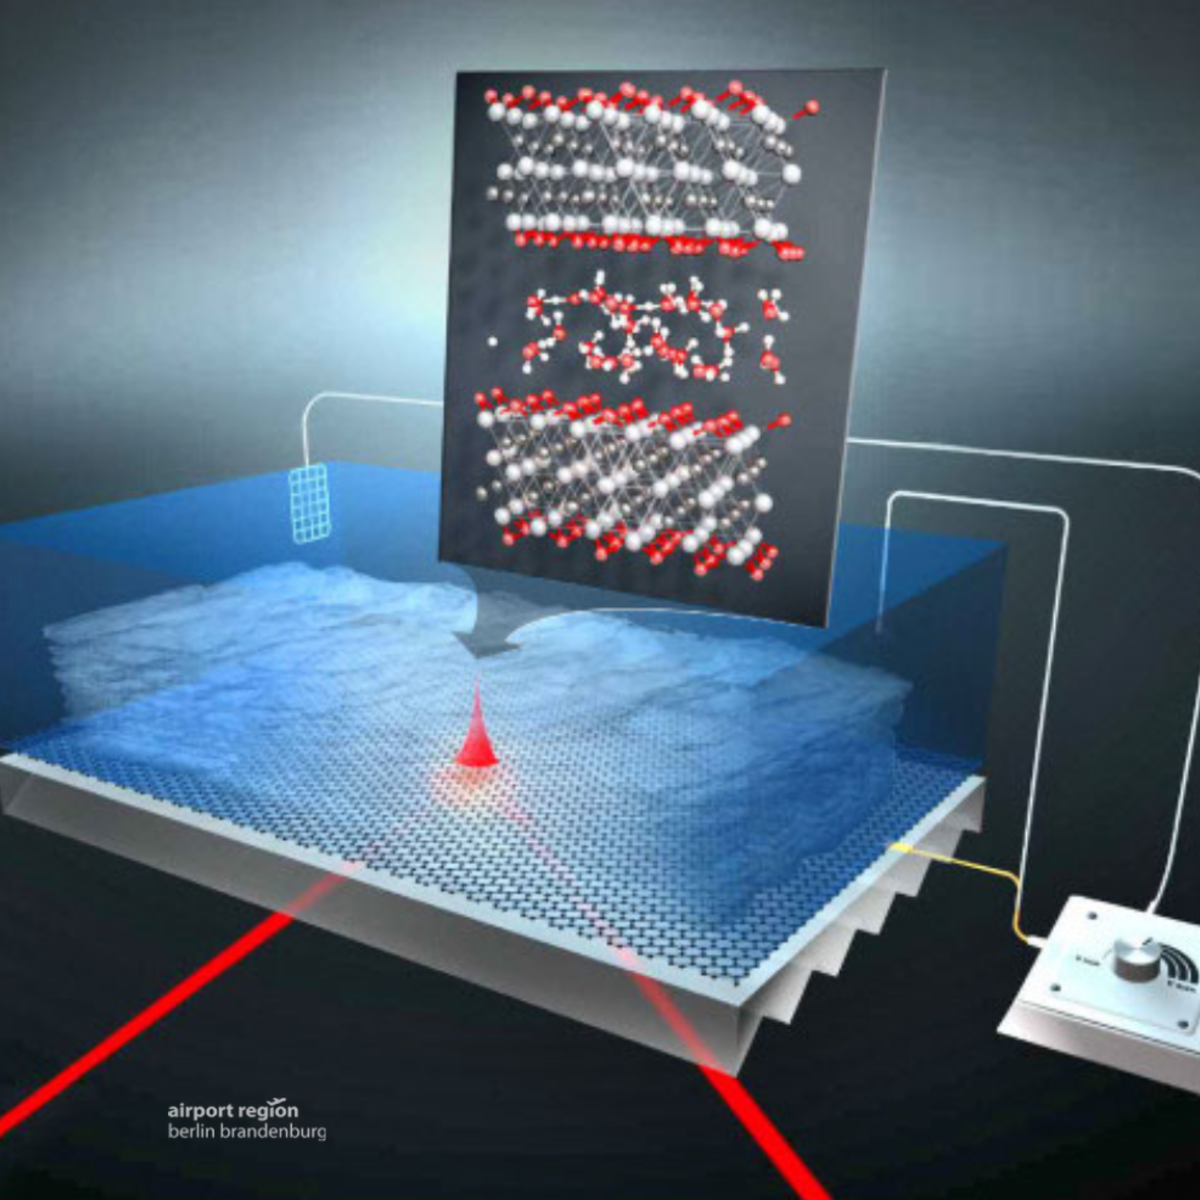 Schematische Darstellung eines Experimenst rund um das Nanomaterial MXene